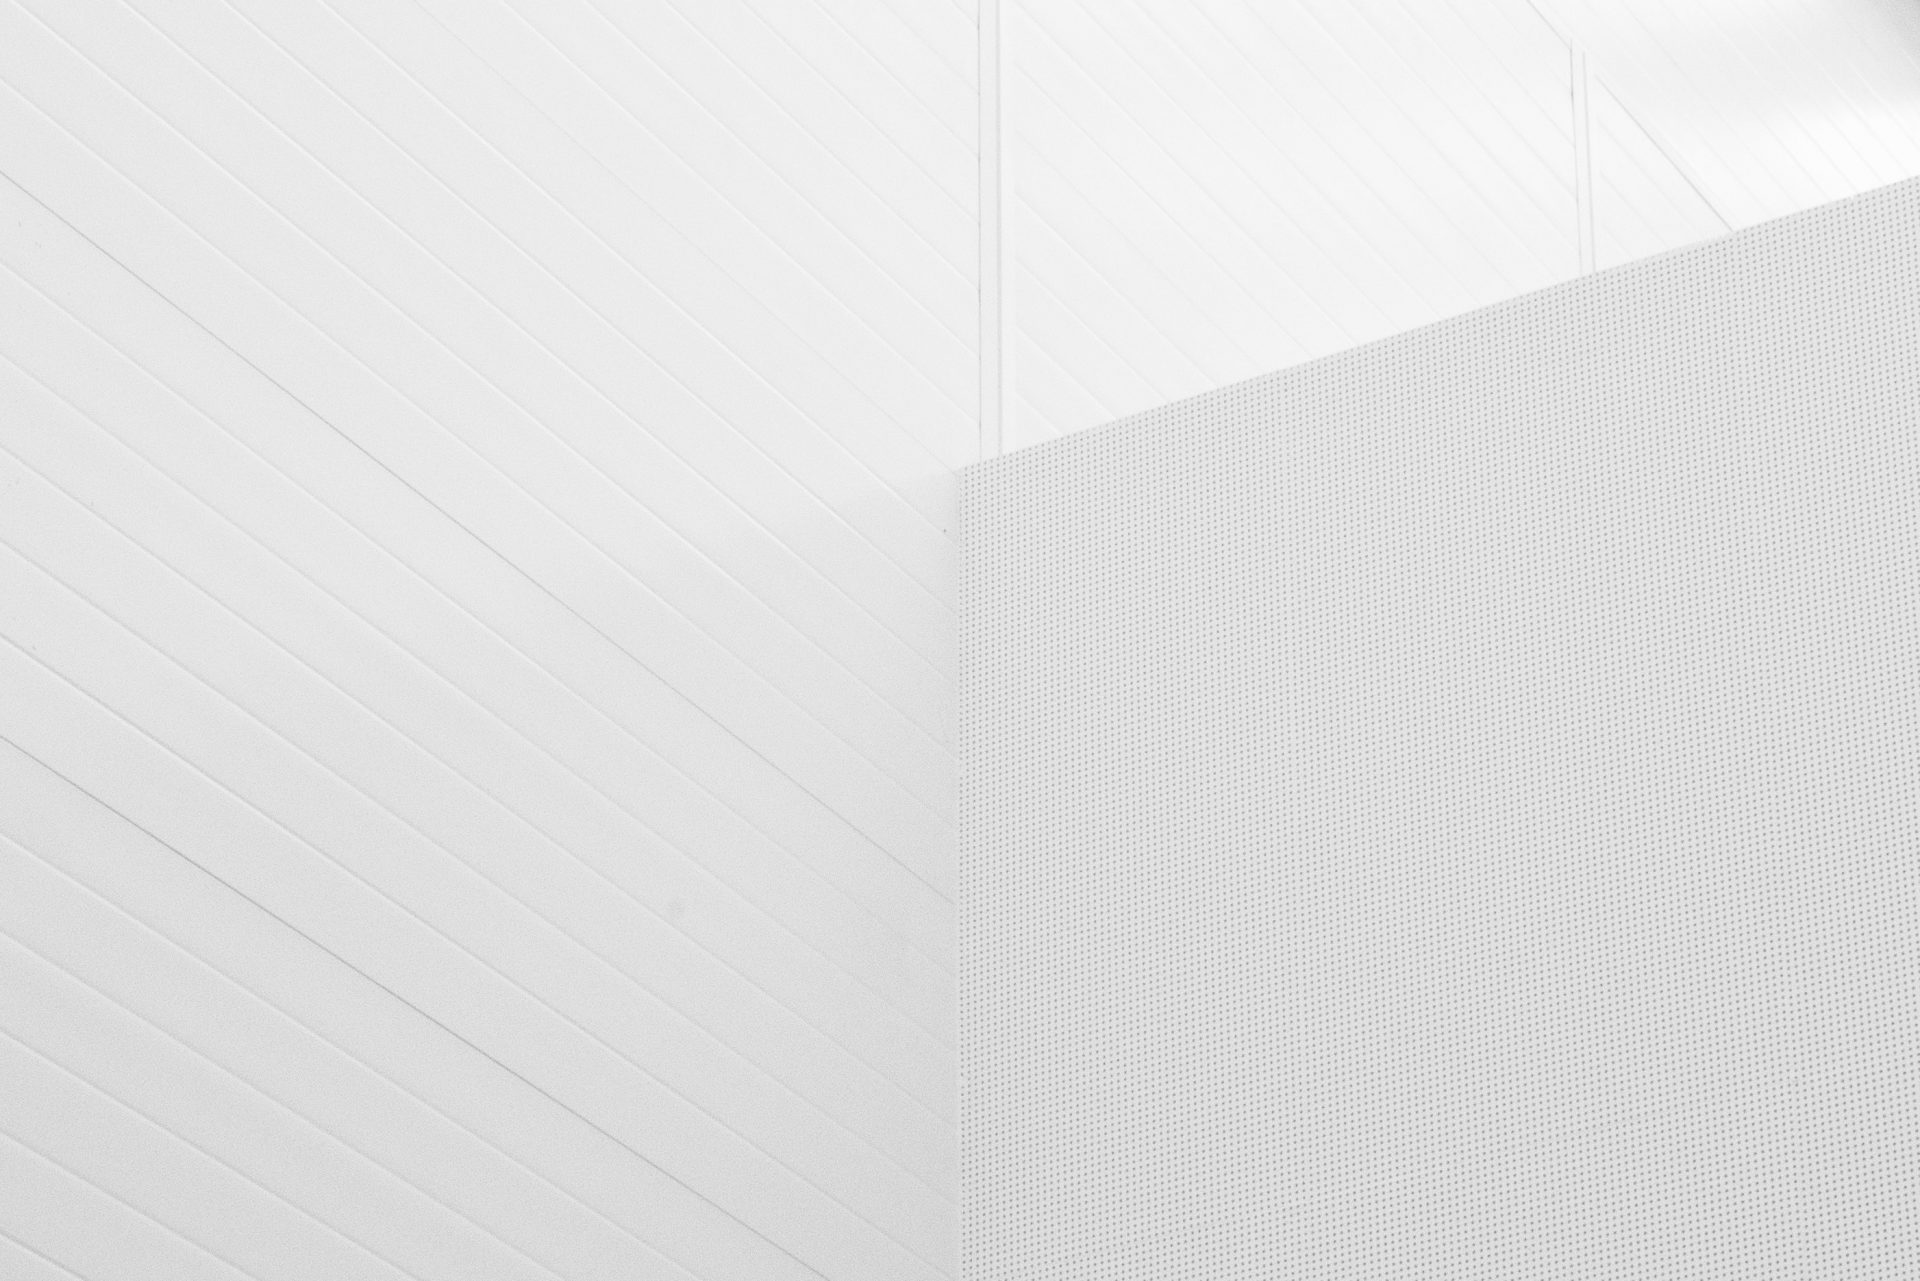 Background tường trắng hiện đại thể hiện một phong cách tinh tế và sáng tạo. Thiết kế ấn tượng, độc đáo, tạo nên vẻ sang trọng và hiện đại. Nhấp chuột ngay để trải nghiệm những ngôi nhà, không gian sống đang sở hữu những background tường trắng hiện đại nhất.